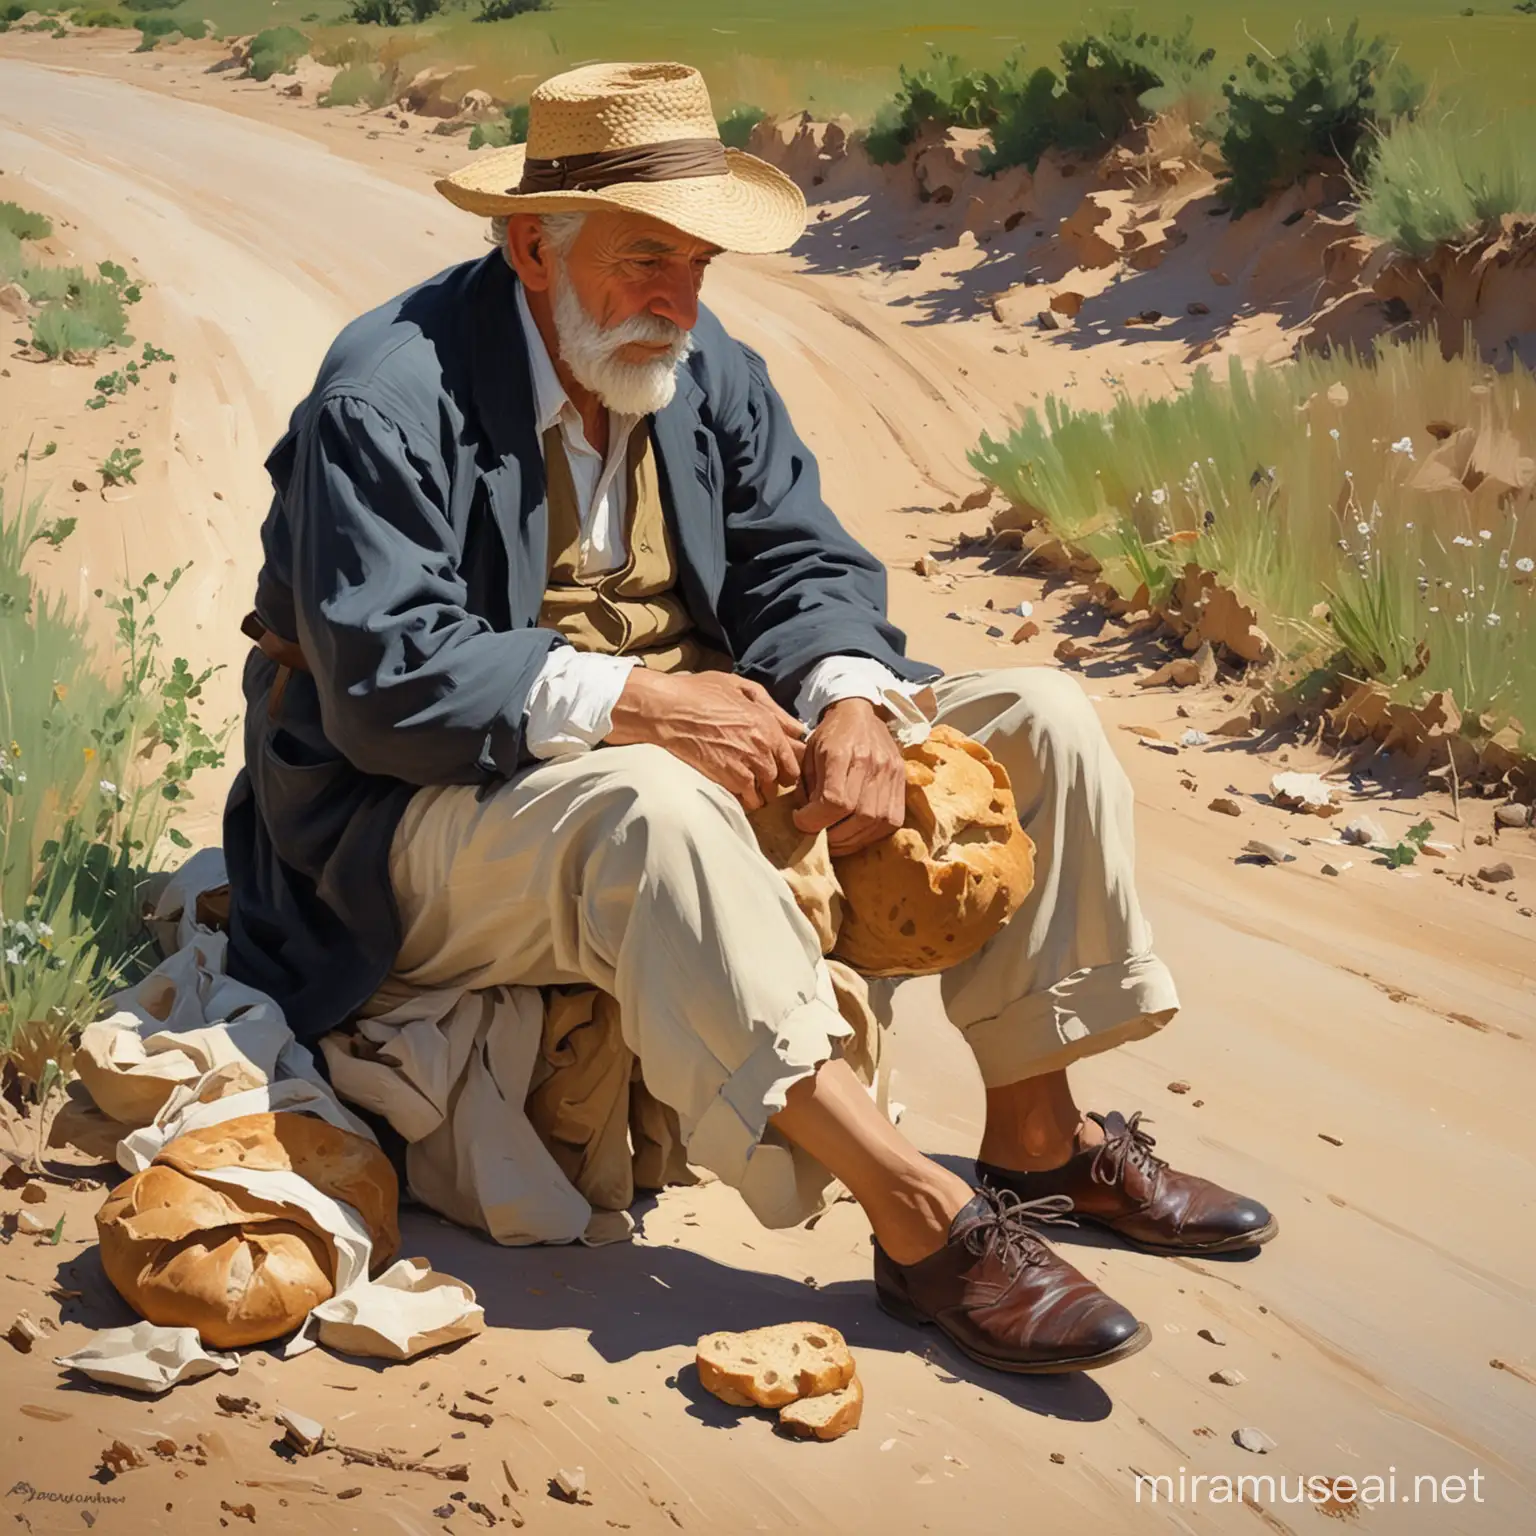 картина в стиле Хоакин Соролья, эпическая старик и мальчик , у дороге в поле, сидят, устали,в руках хлеб и крушка с водой, босой ,бадинки рядом